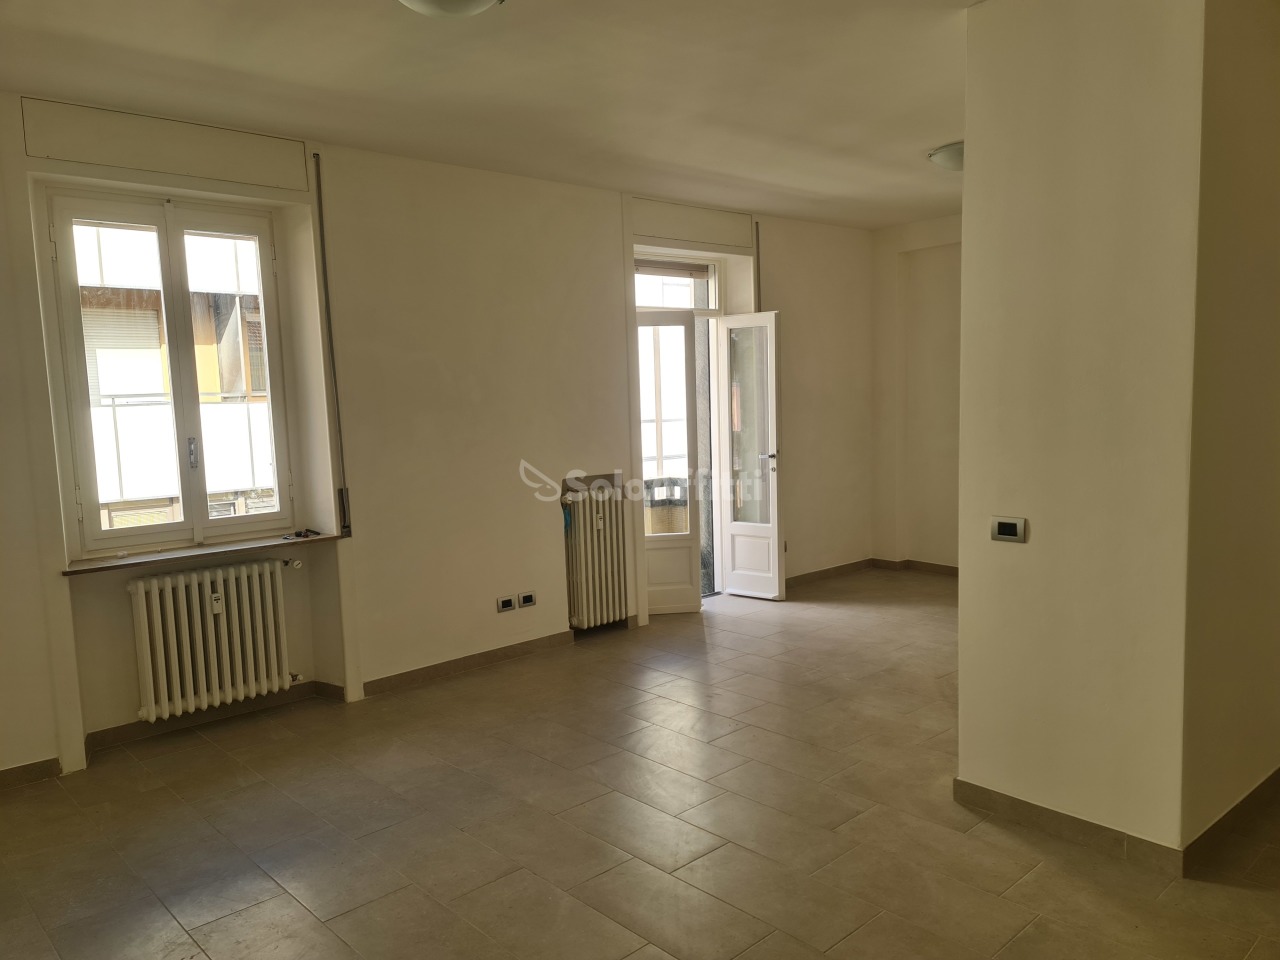 Appartamento in affitto a Saronno, 3 locali, prezzo € 700 | PortaleAgenzieImmobiliari.it